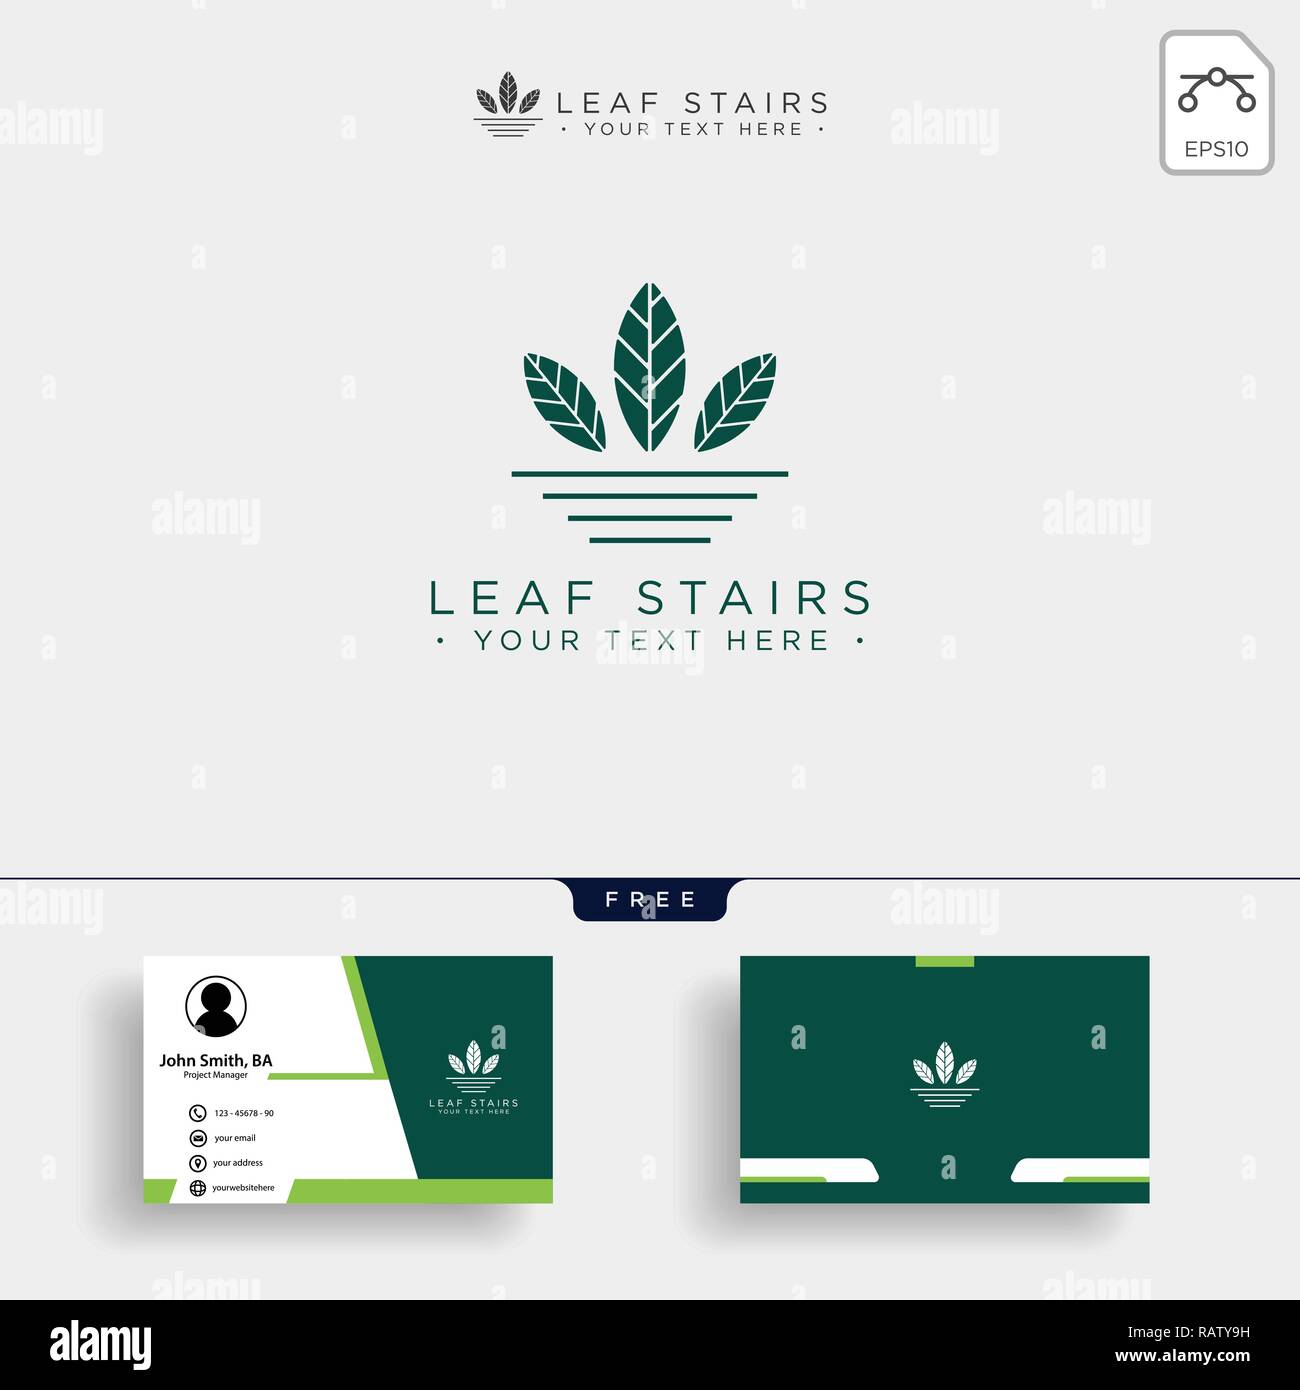 Logo Leafs Concept. Eco logo créative avec des feuilles vertes et des escaliers et de cartes d'affaires - vecteur modèle Illustration de Vecteur